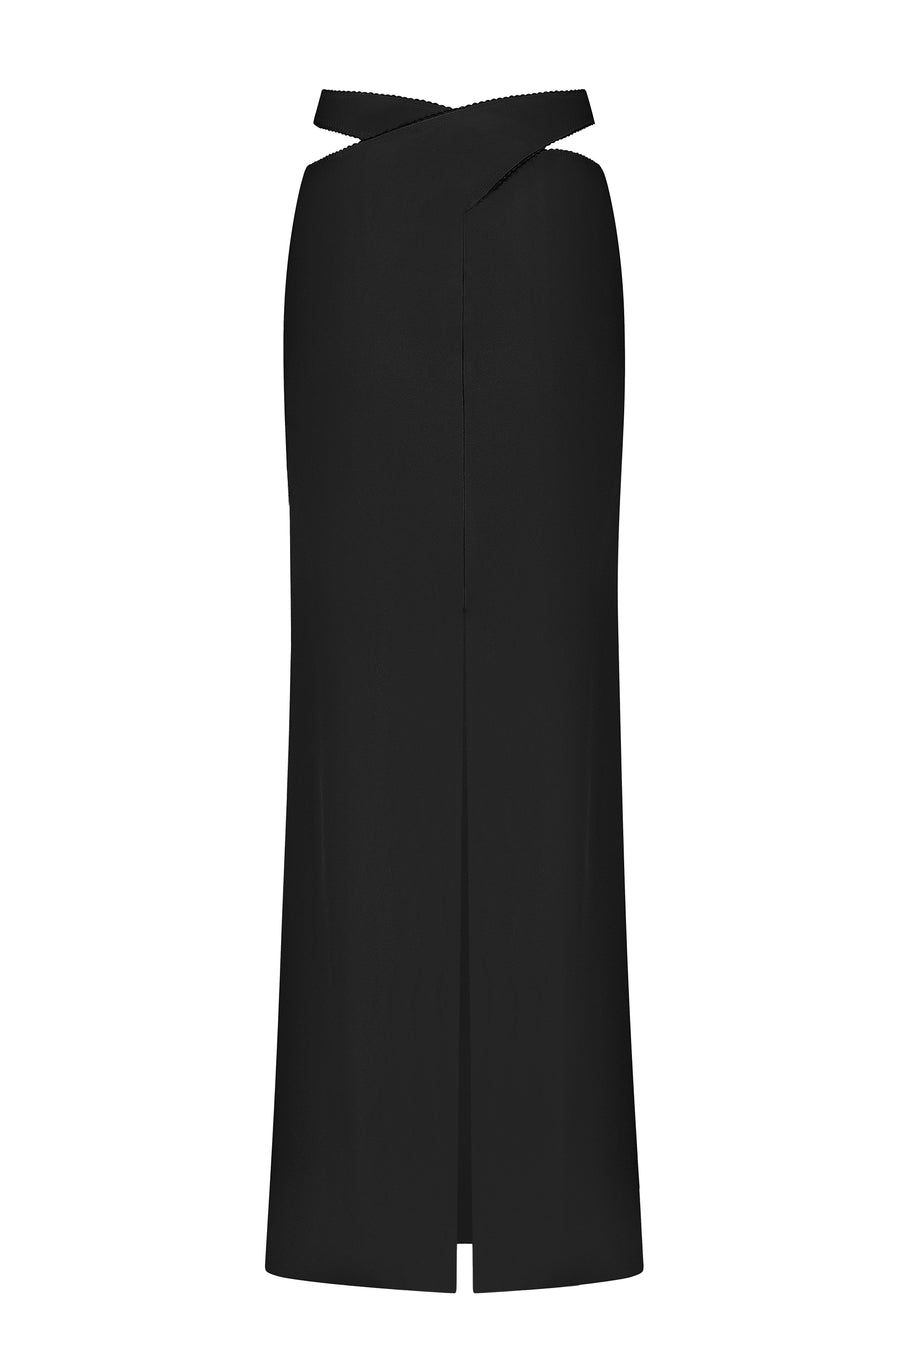 Keira Skirt